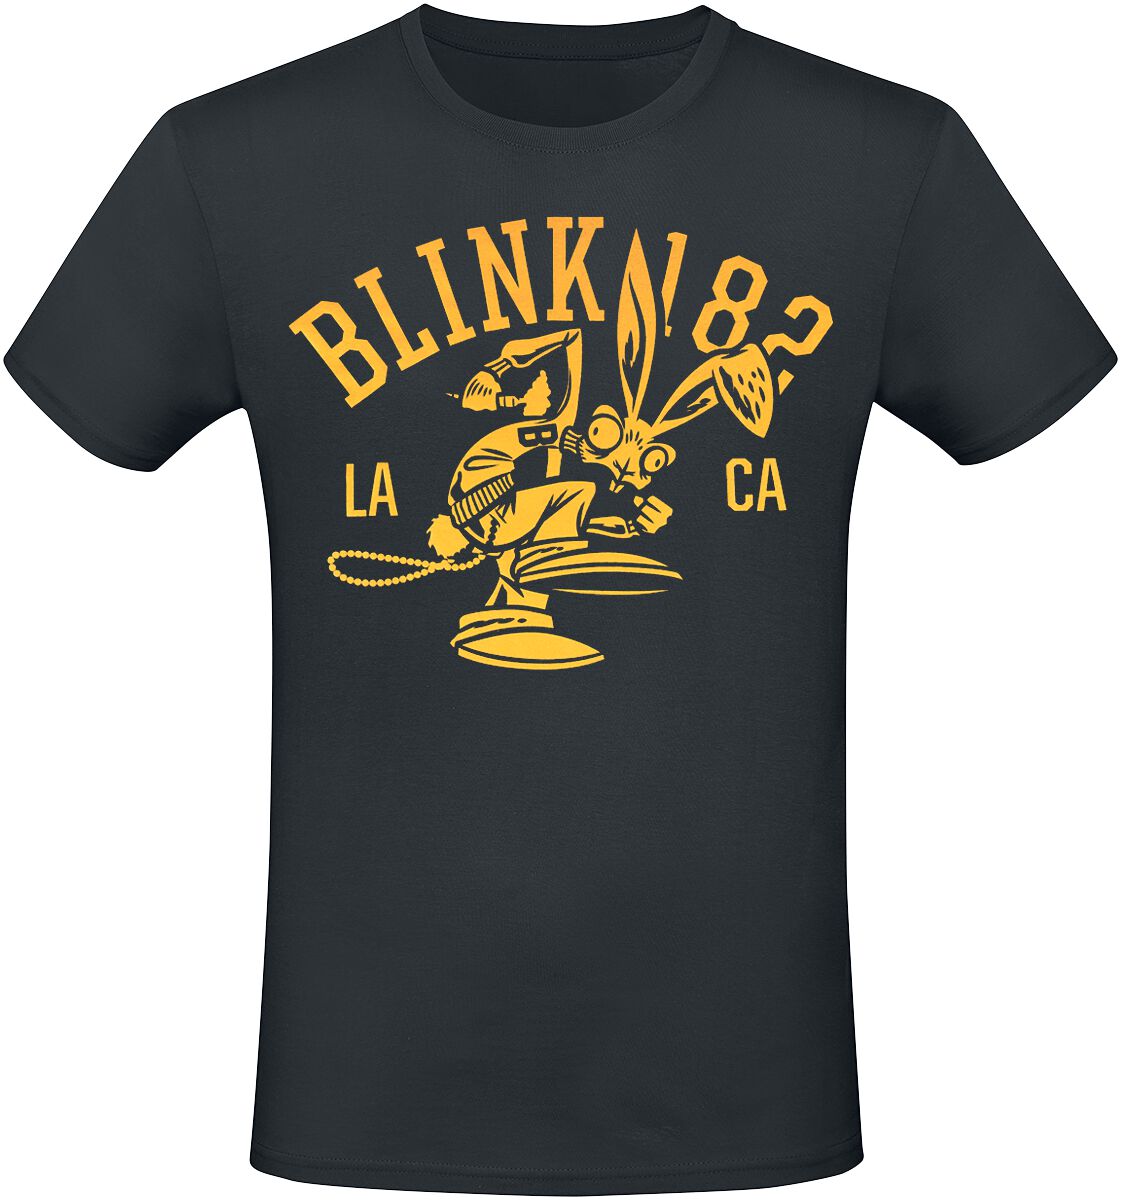 Blink-182 T-Shirt - Mascot - S bis 3XL - für Männer - Größe L - schwarz  - Lizenziertes Merchandise!